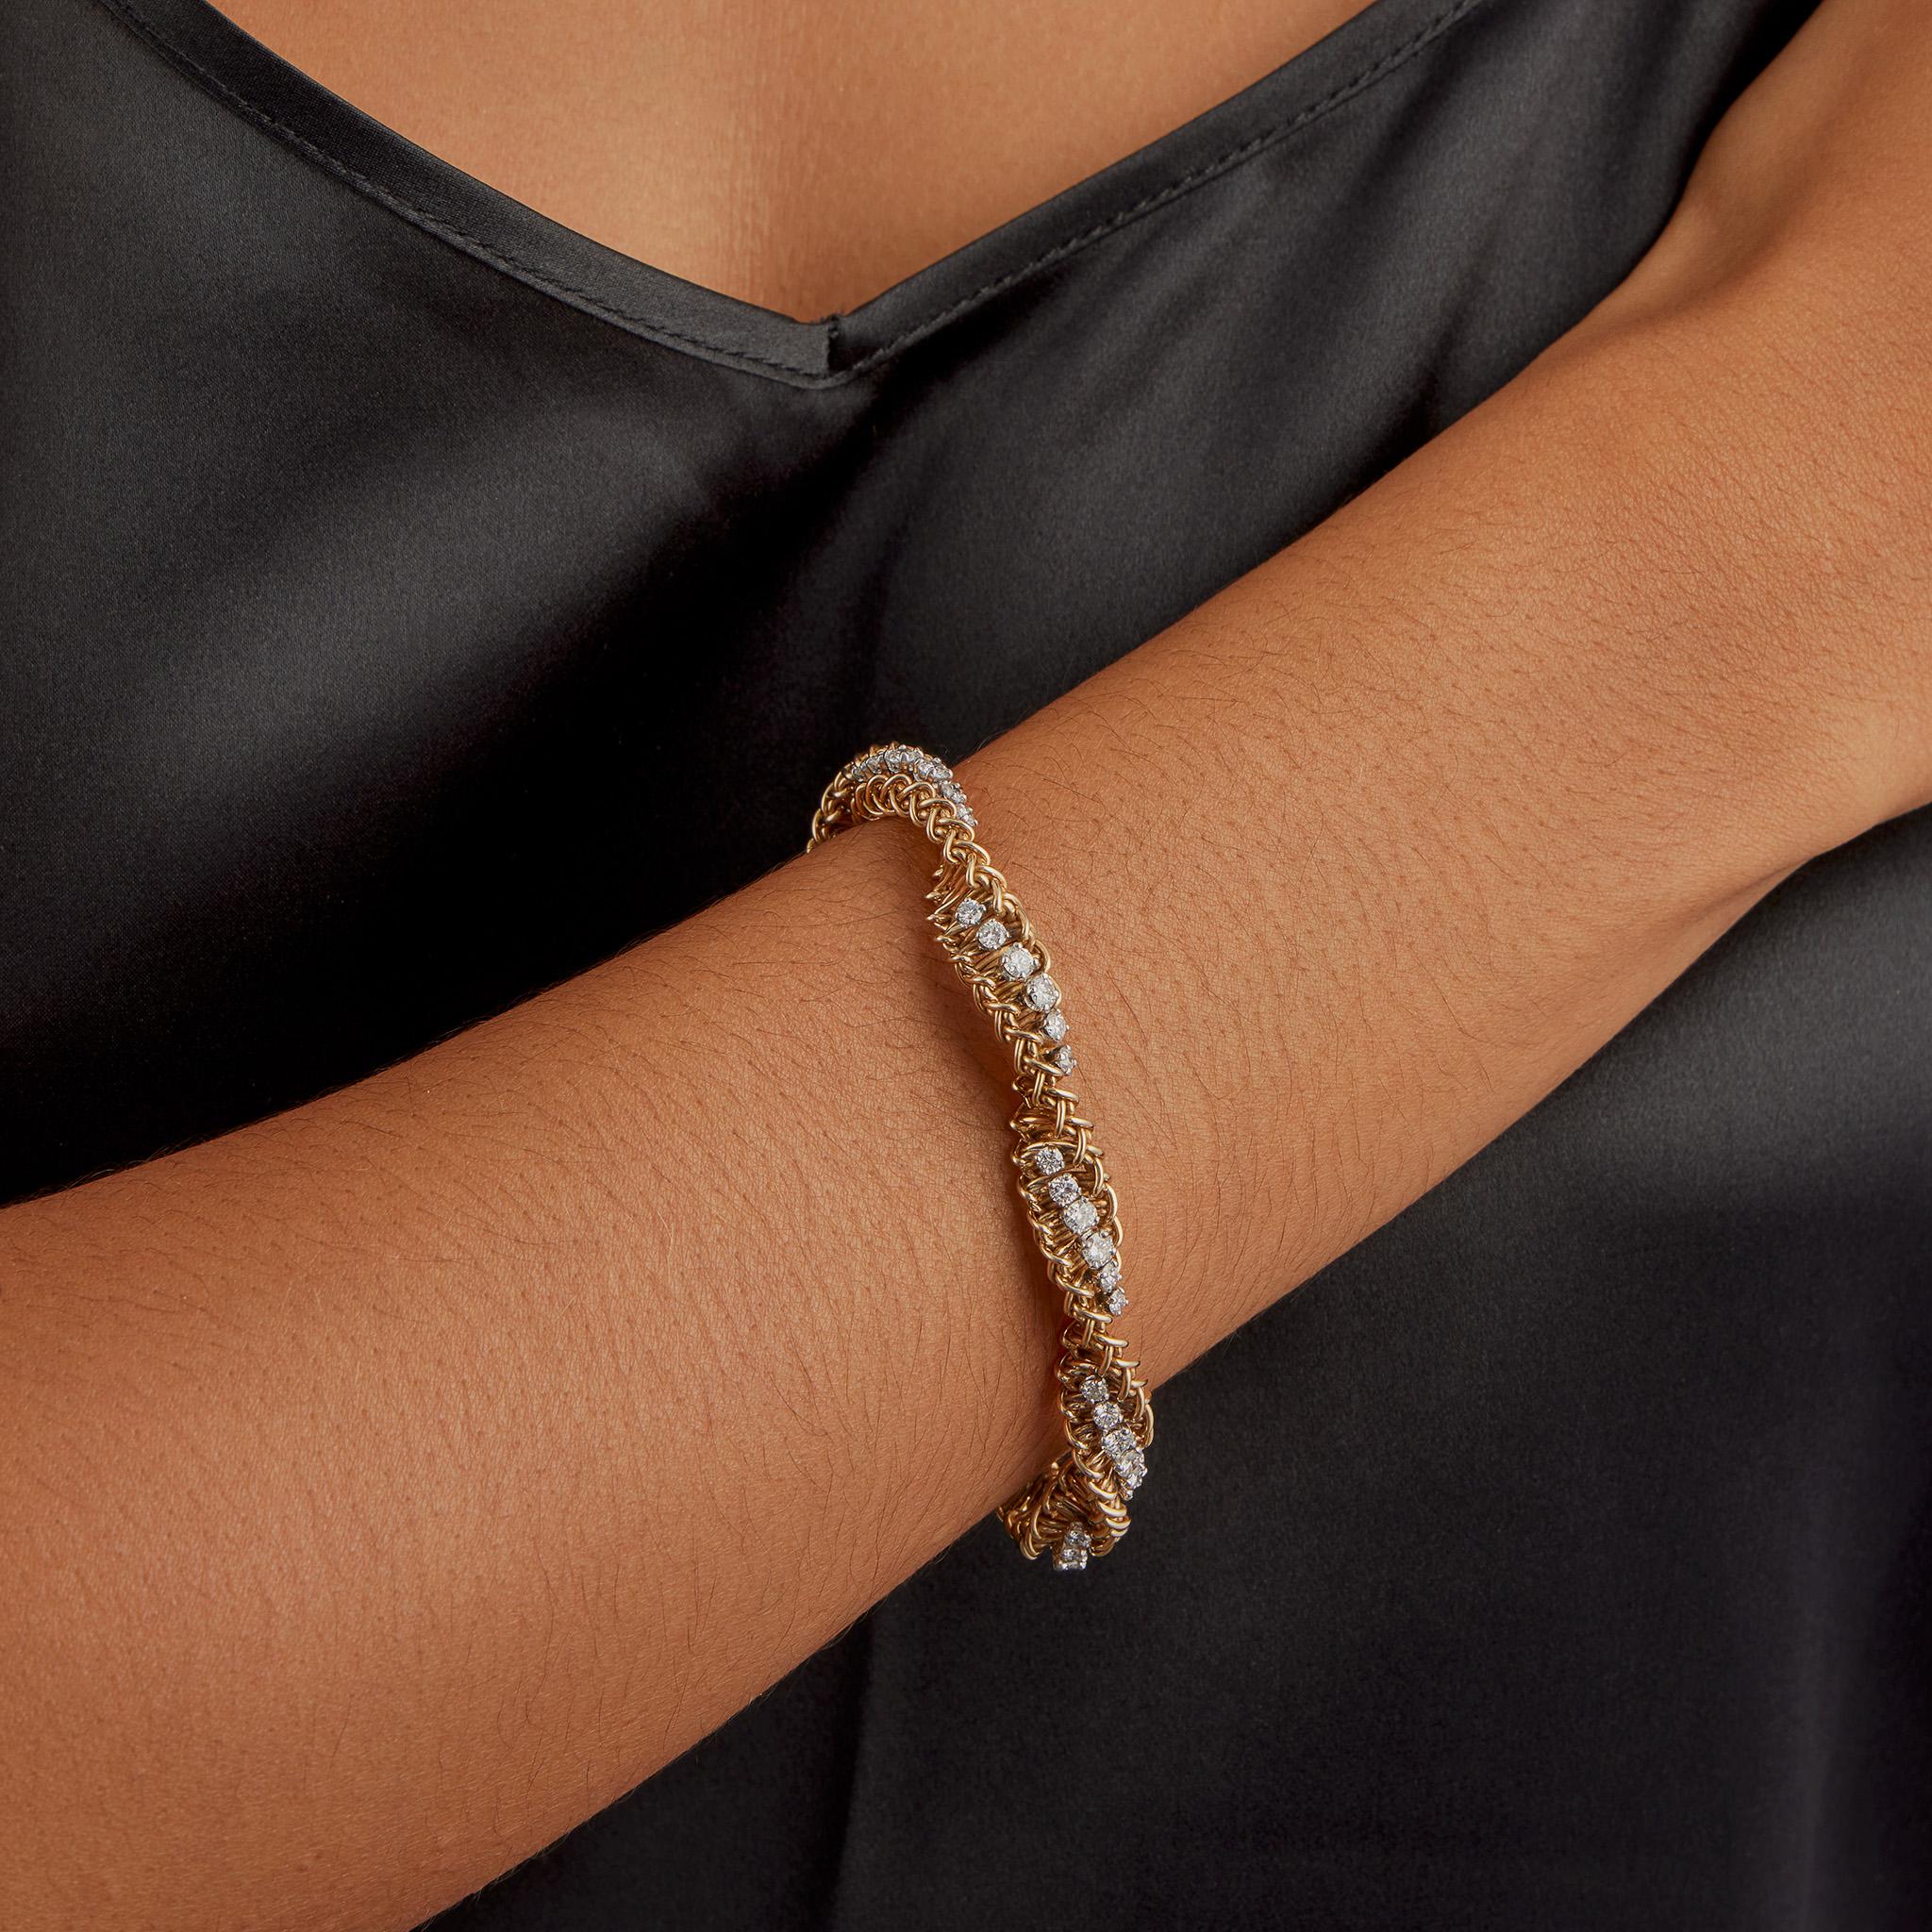 Créé dans les années 1960-1970, ce bracelet ropetwist en or 18k est serti de plus de 5 carats de diamants ronds de taille brillant. Il est conçu comme une double hélice torsadée de doubles fils métalliques entrelacés, sertis à intervalles réguliers